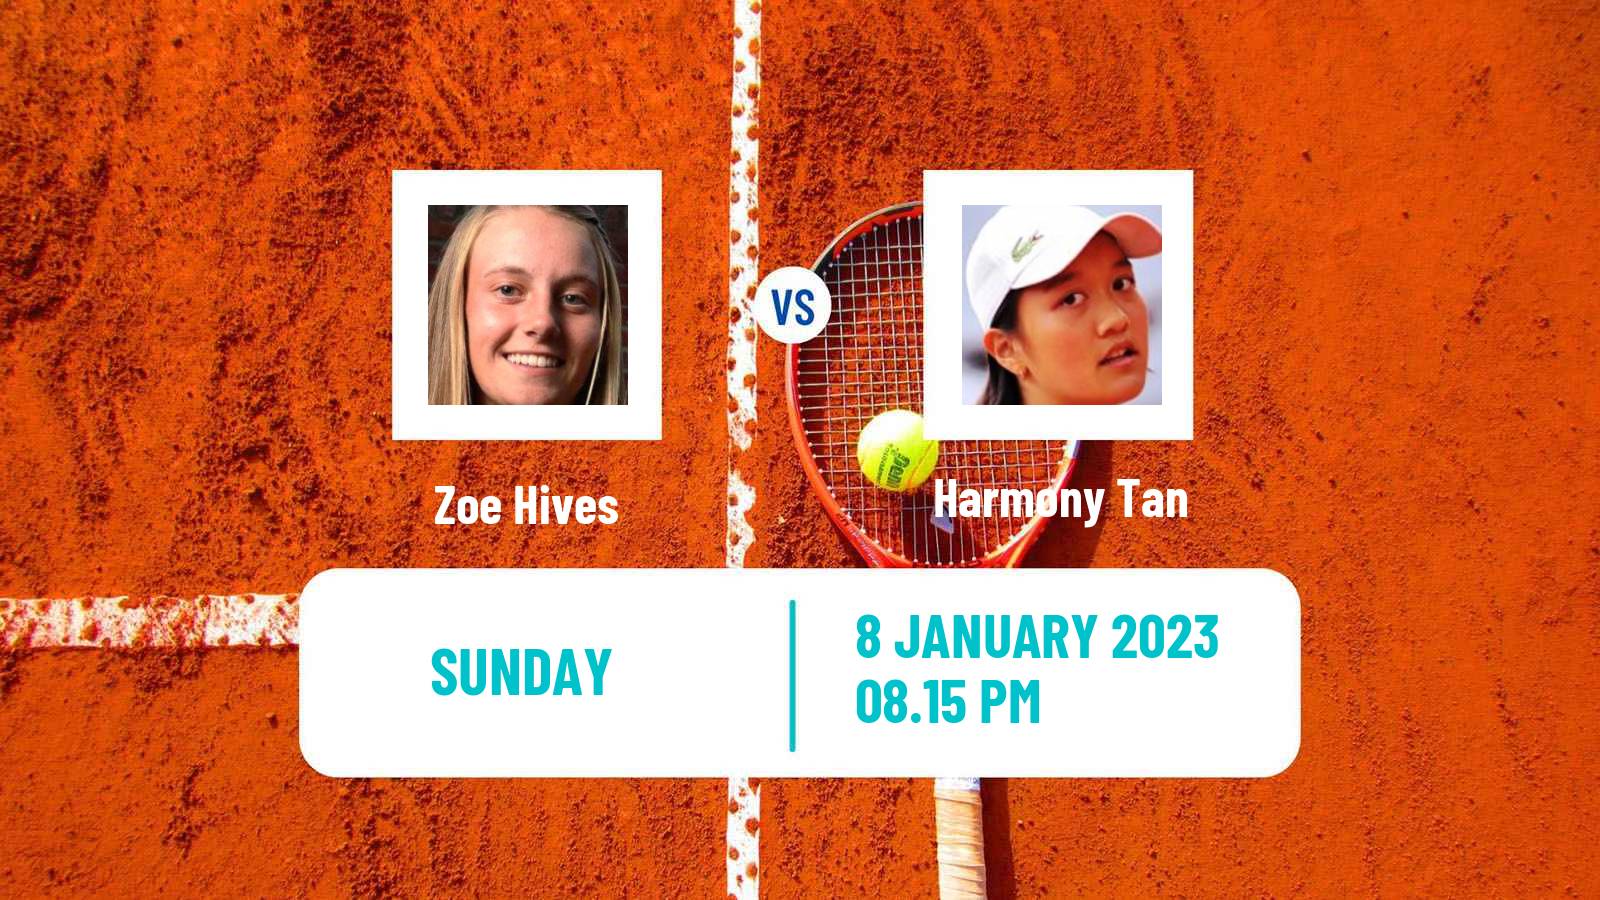 Tennis WTA Australian Open Zoe Hives - Harmony Tan